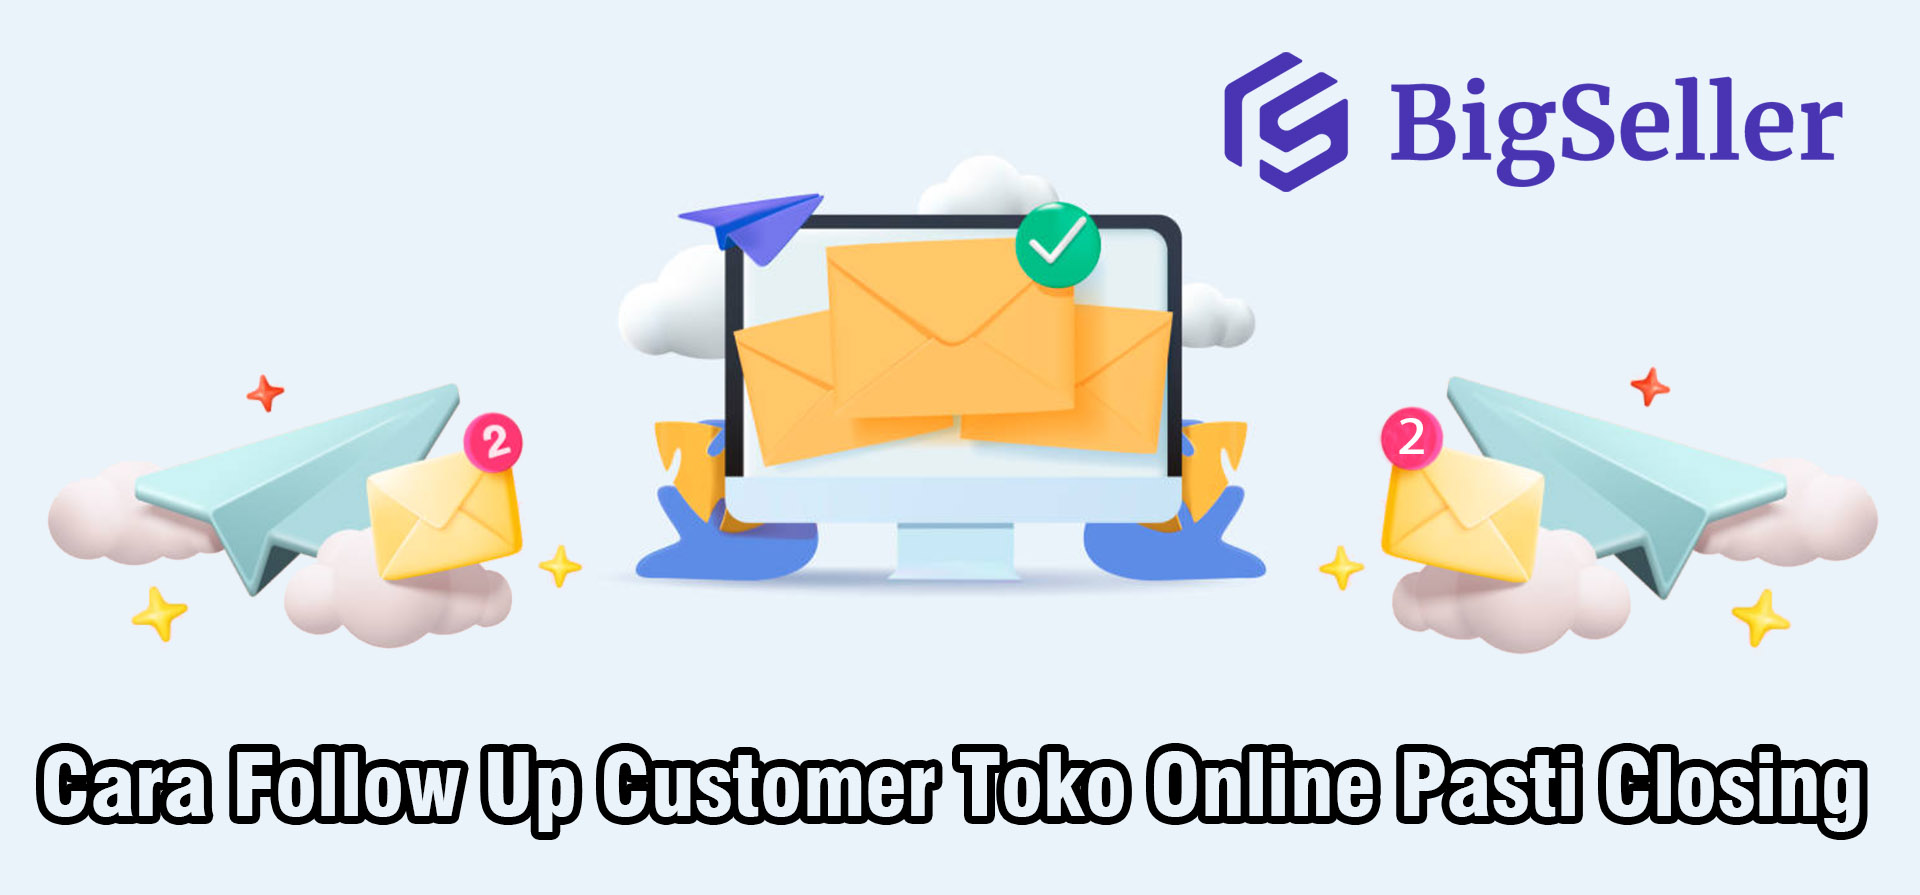 Cara Follow Up Customer Toko Online Pasti Closing